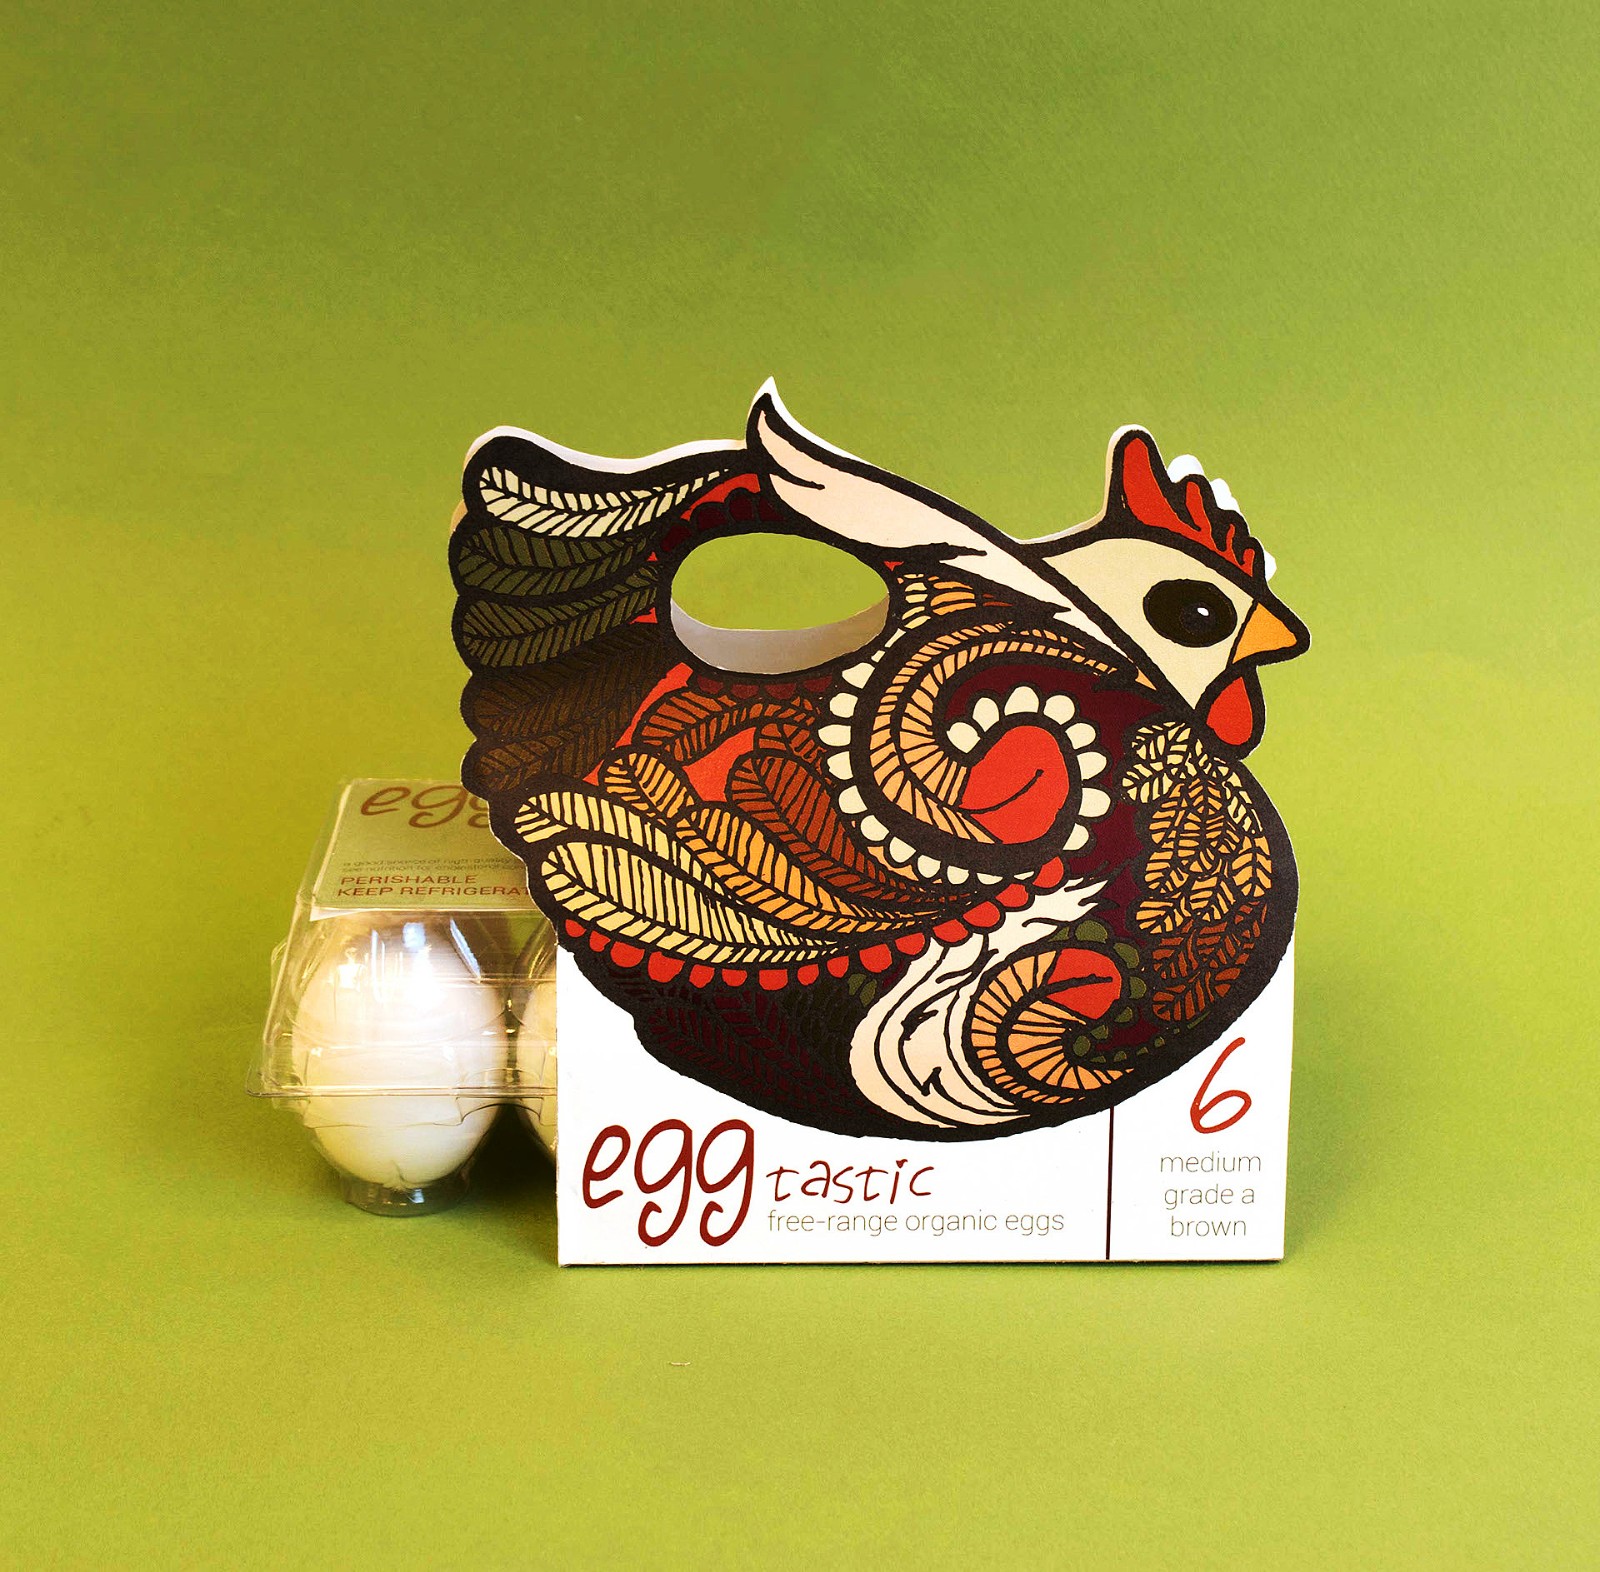 农产品鸡蛋包装设计案例赏析 